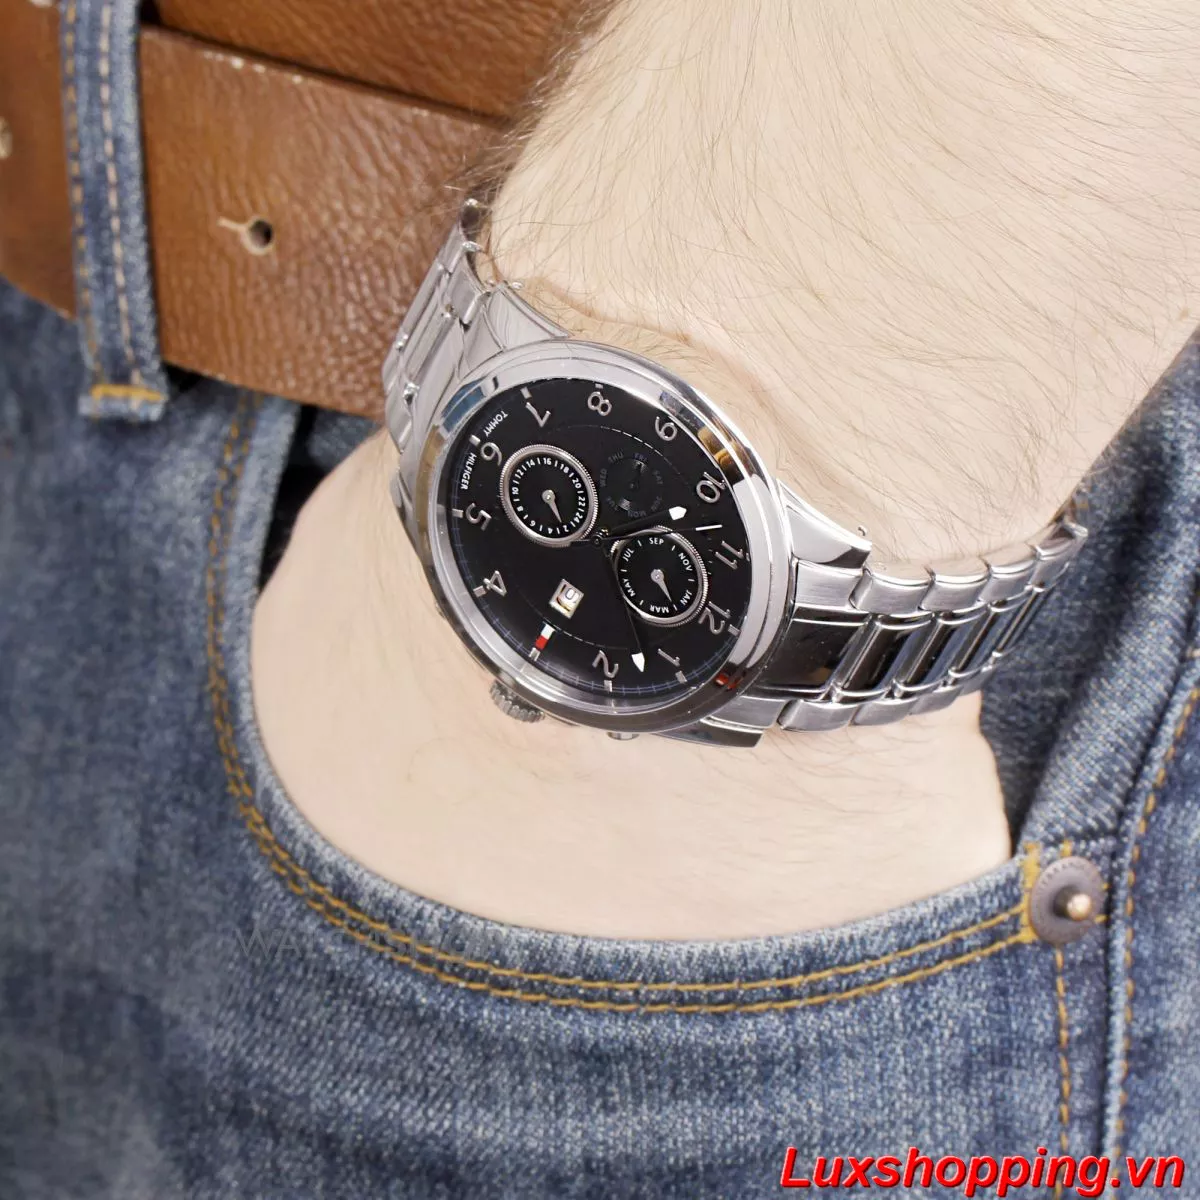 Tommy Hilfiger Men's watch, 44mm